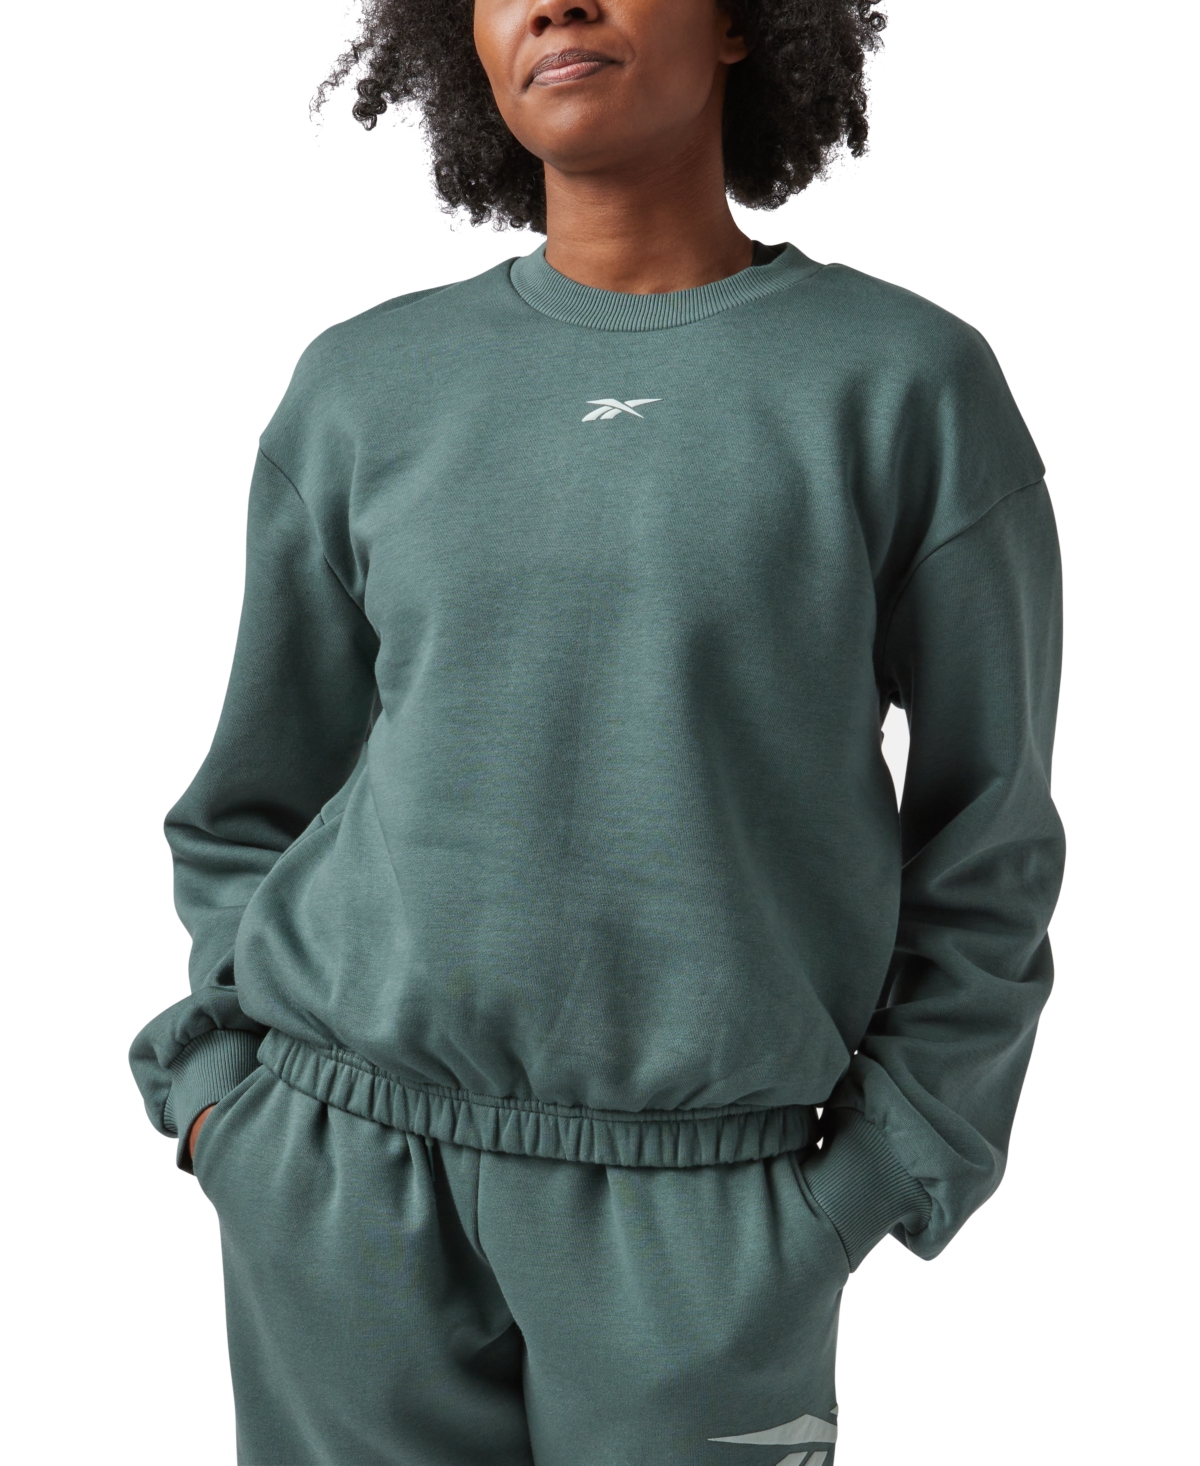 Reebok Women's Back Vector Fleece Sweatshirt, A Macy's Exclusive In Chalkgrn